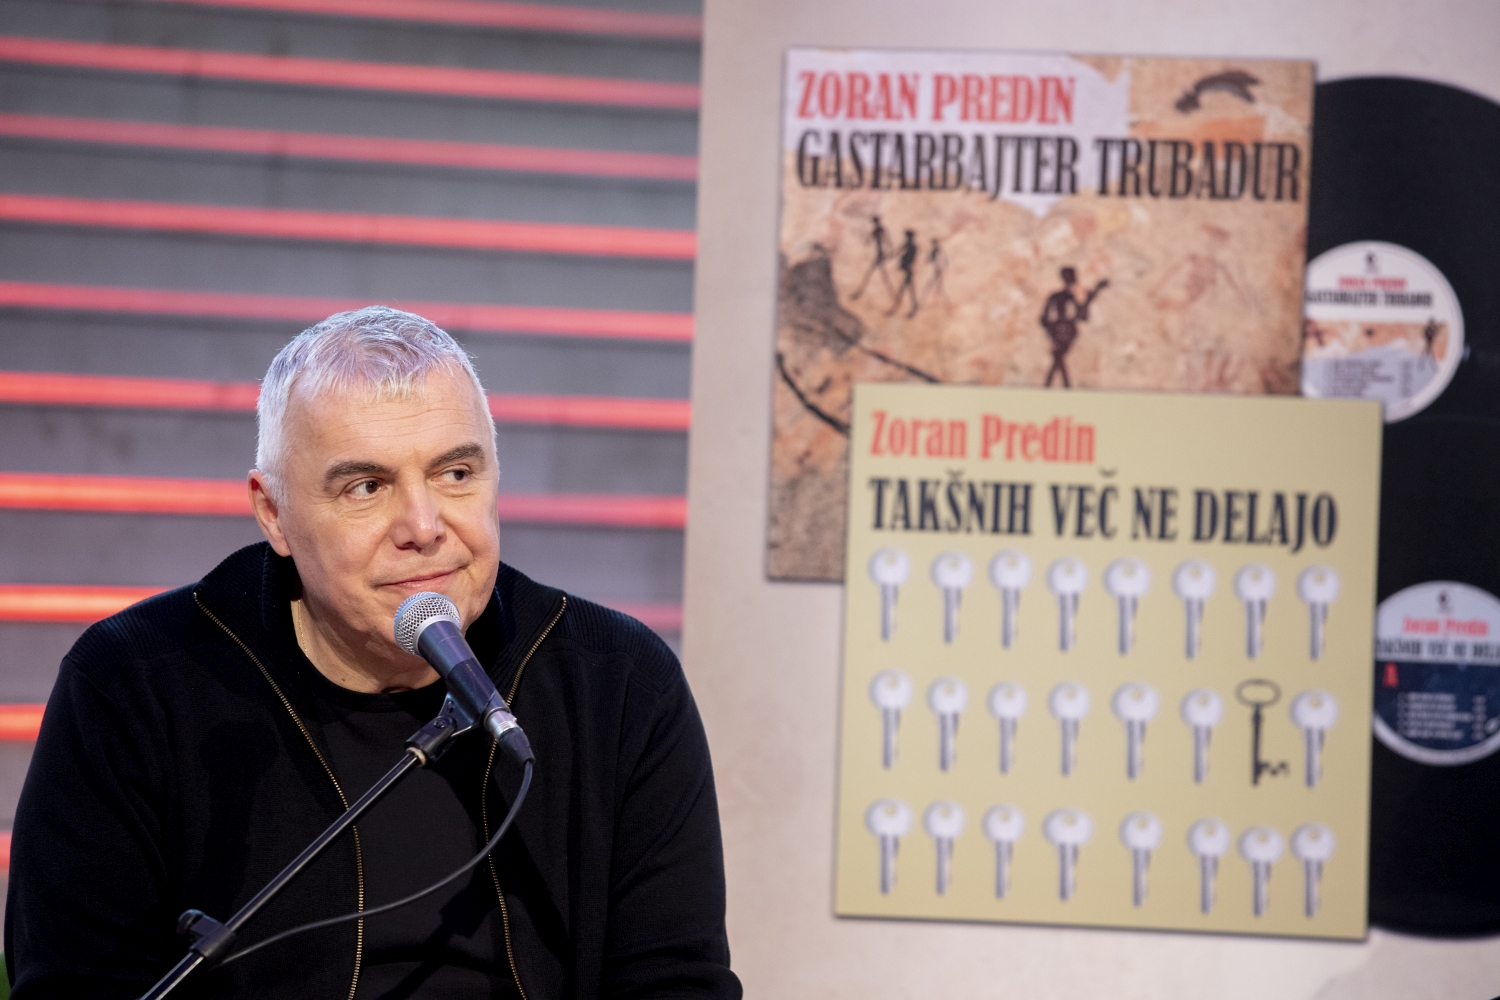 Zoran Predin predstavio nove albume ‘Gastarbajter trubadur’ i ‘Takšnih več ne delajo’